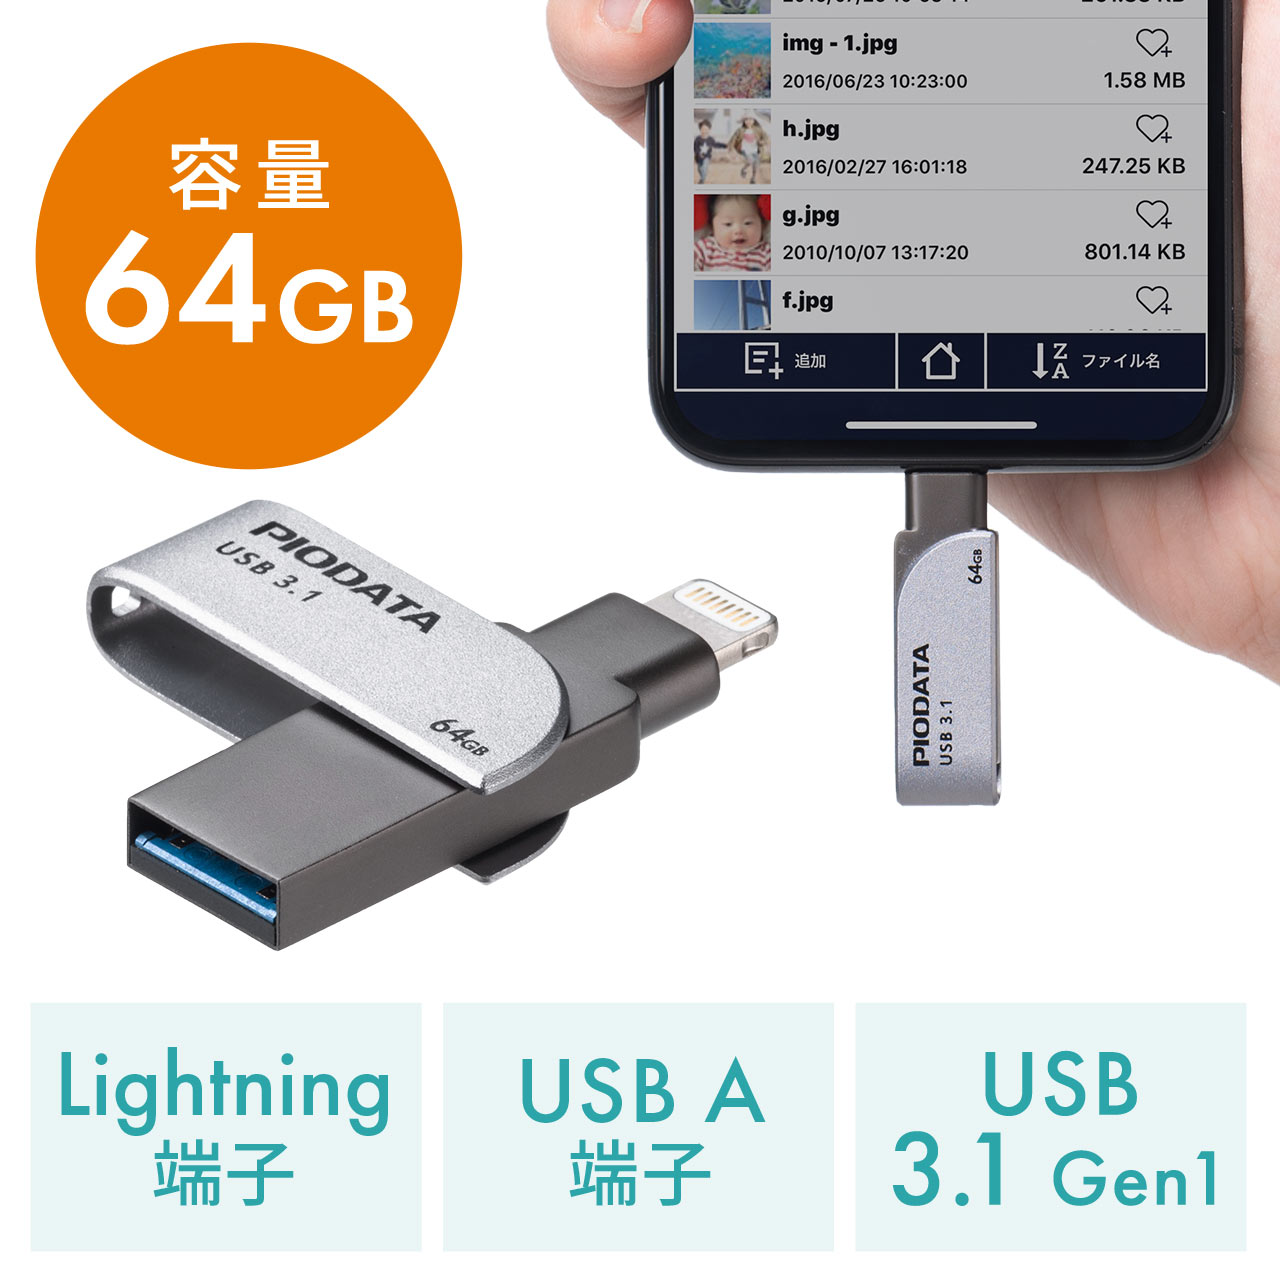 Iphone Ipad Usbメモリ 64gb Usb3 1 Gen1 Lightning対応 Mfi認証 スイング式 600 Ipl64gx3の販売商品 通販ならサンワダイレクト